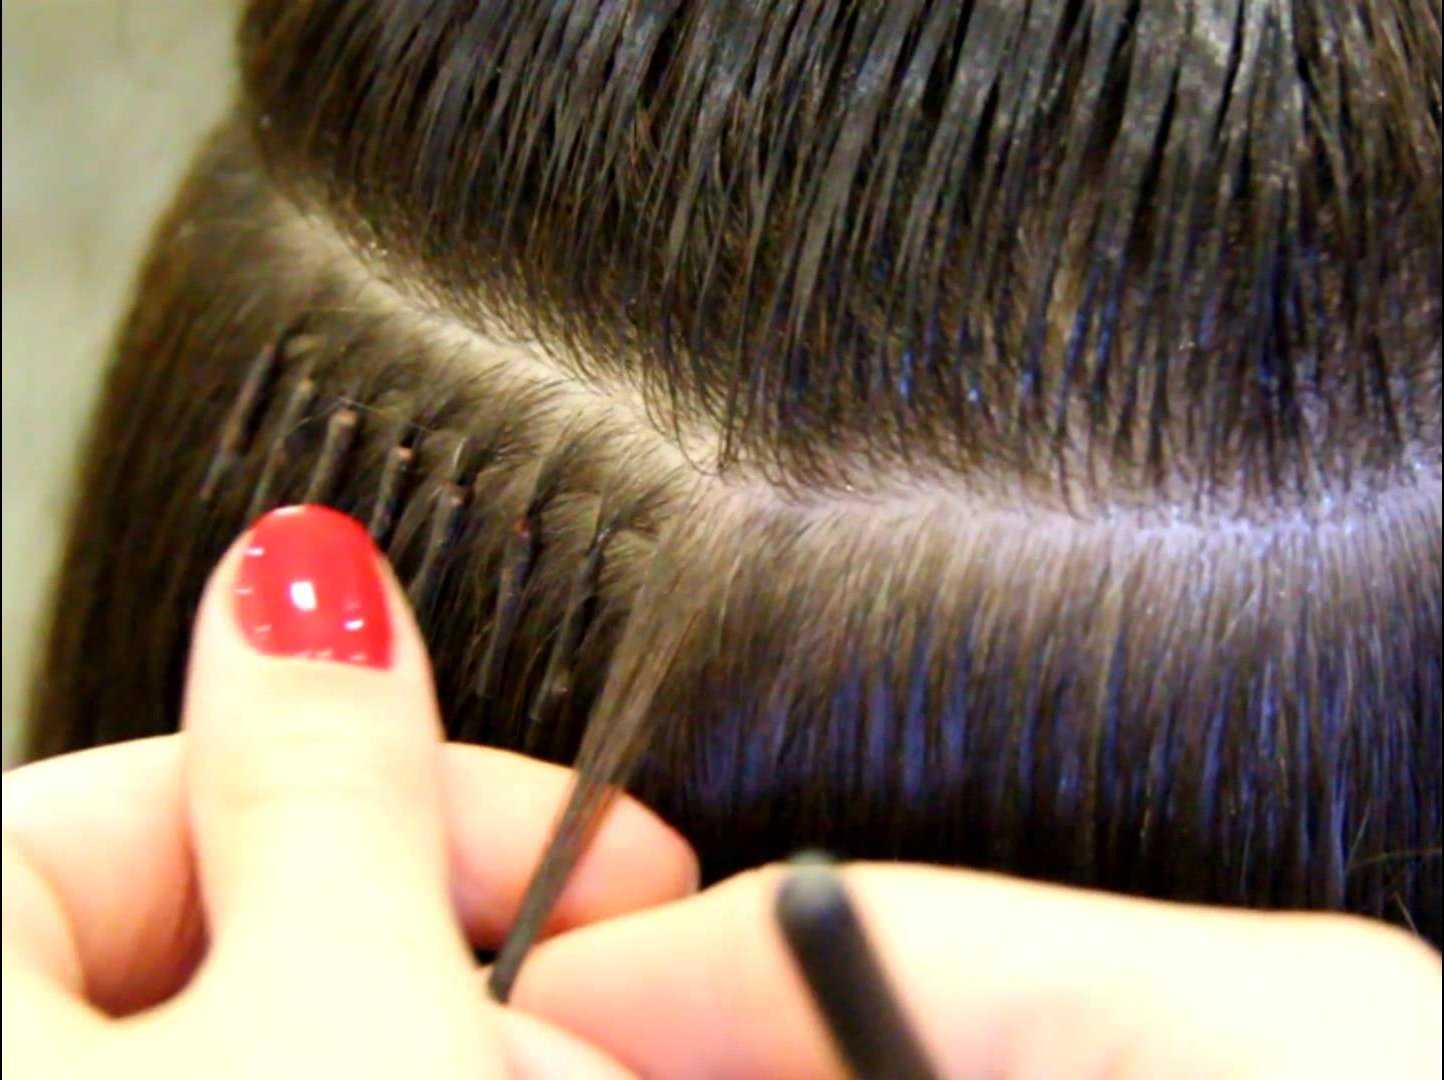 За что так ценится бескапсульное наращивание волос? особенности метода, его плюсы и минусы